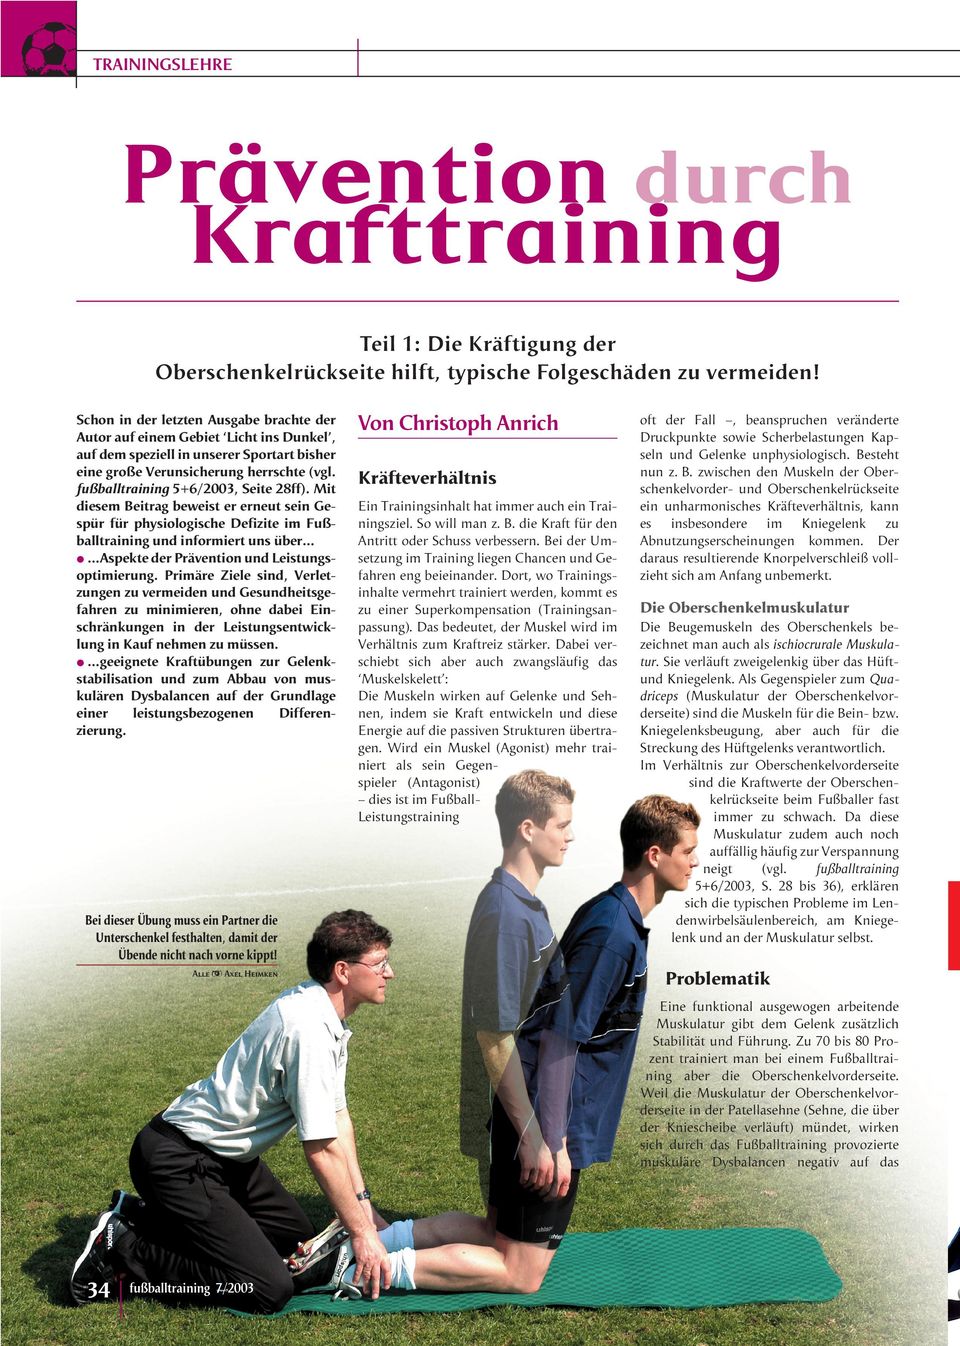 fußballtraining 5+6/2003, Seite 28ff).